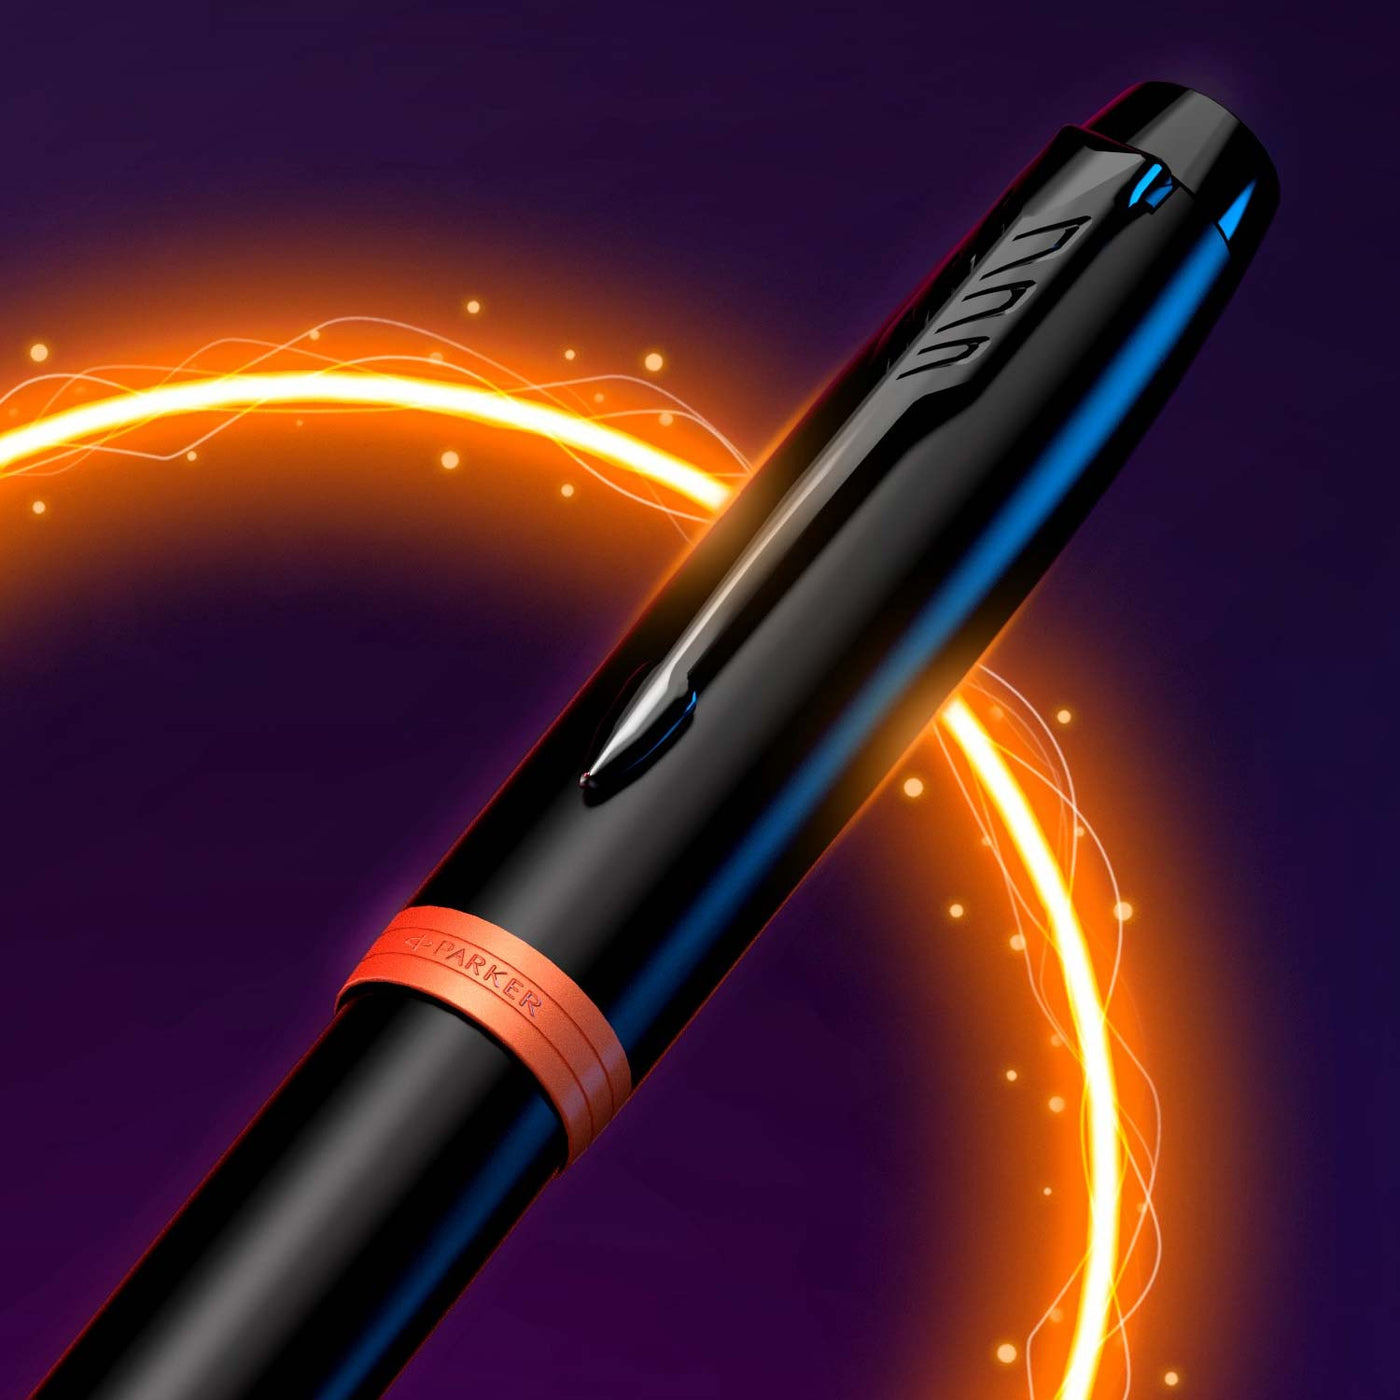 Parker IM Vibrant Rings Fountain Pen - Flame Orange Black BT